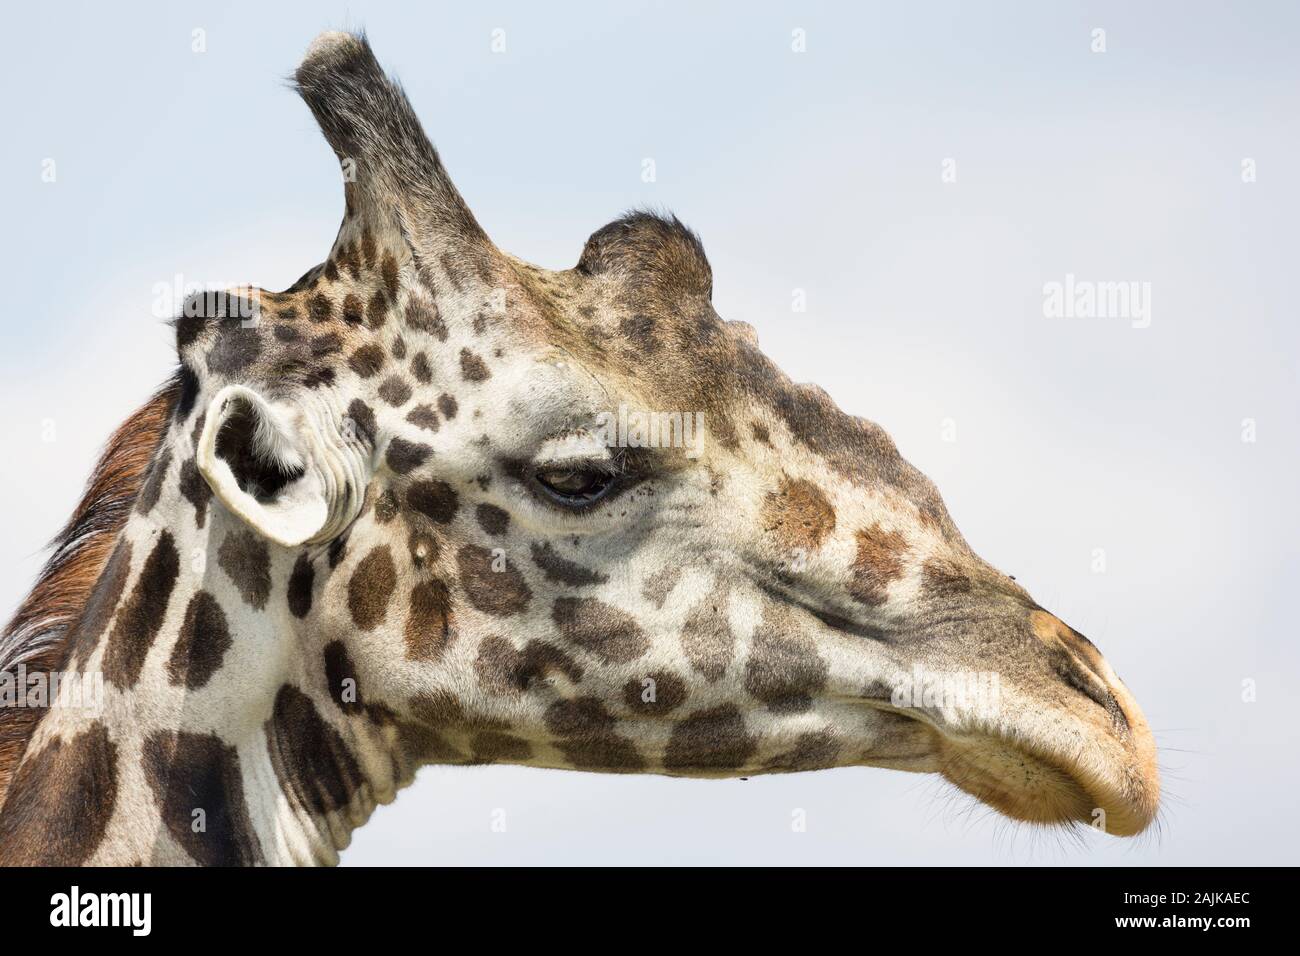 Vue rapprochée de la tête d'une girafe mâle dans le profil Banque D'Images